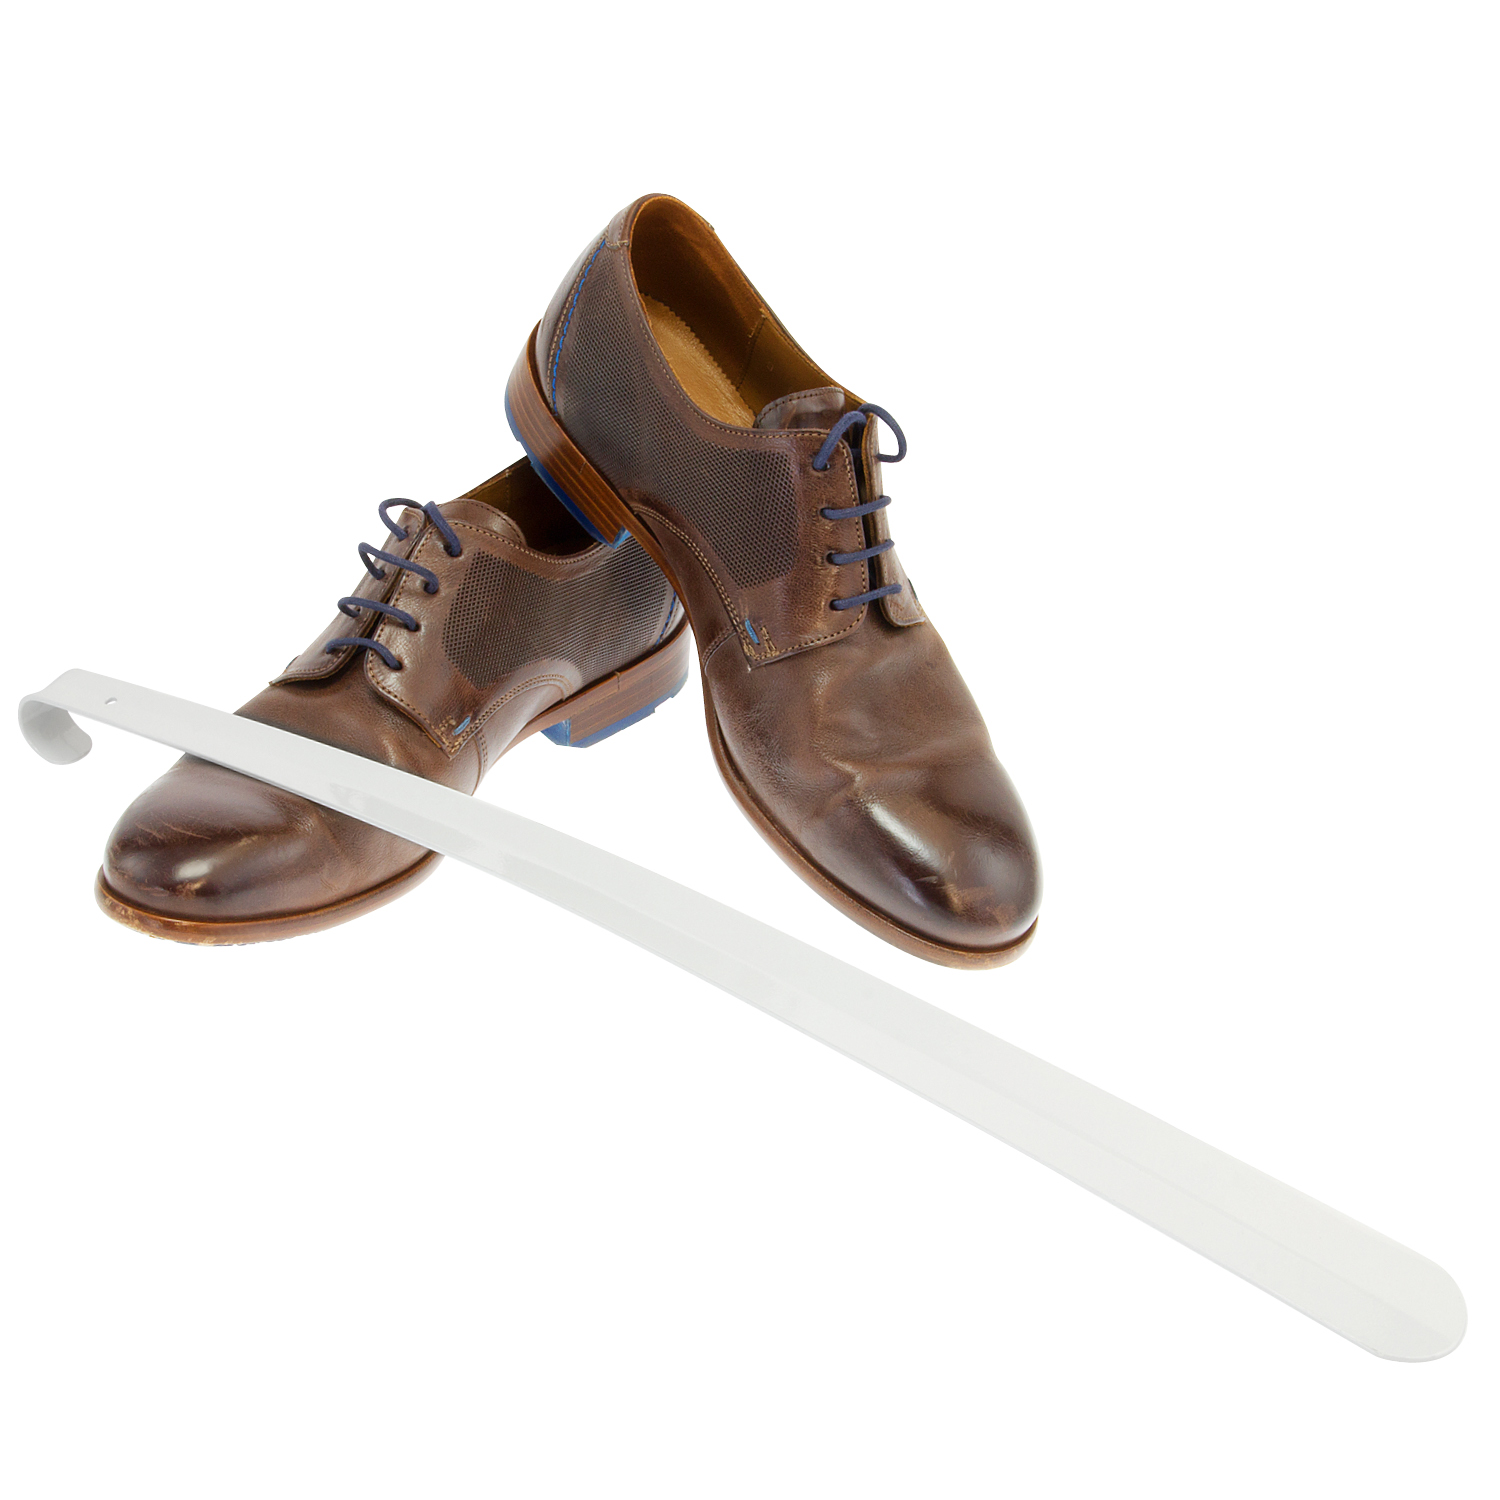 Schuhlöffel, Komfort-Schuhanzieher, groß 58 cm, aus Metall gefertigt, weiß lackiert